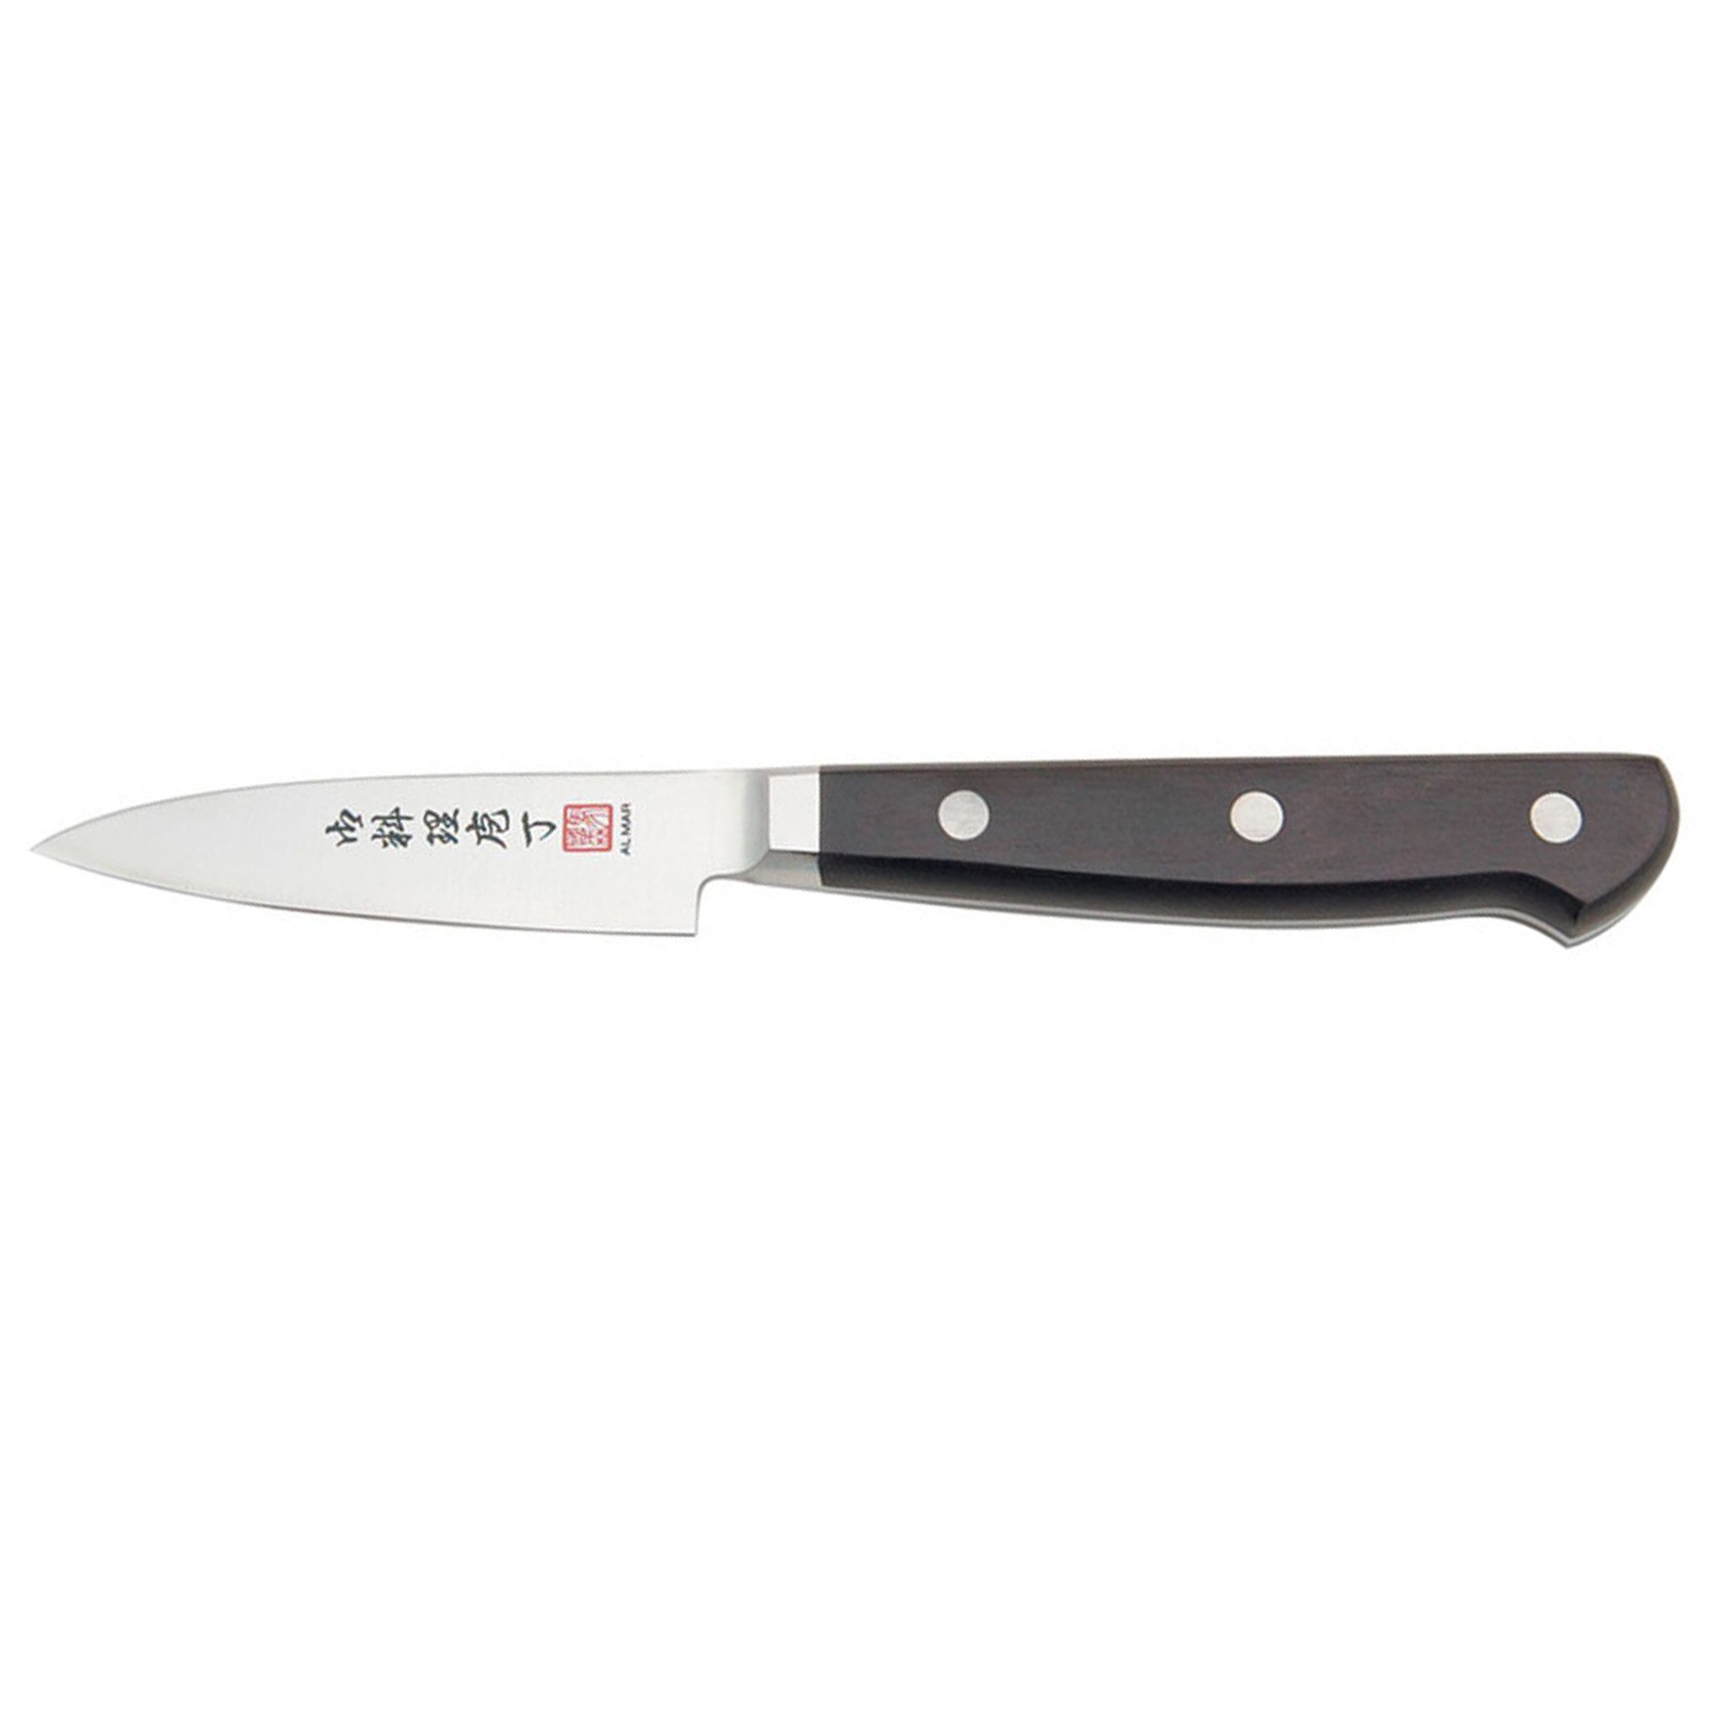 Нож кухонный Al Mar, сталь VG-2/Laminated SUS 410, рукоять Pakka wood, для чистки овощей и фруктов. Фото №2